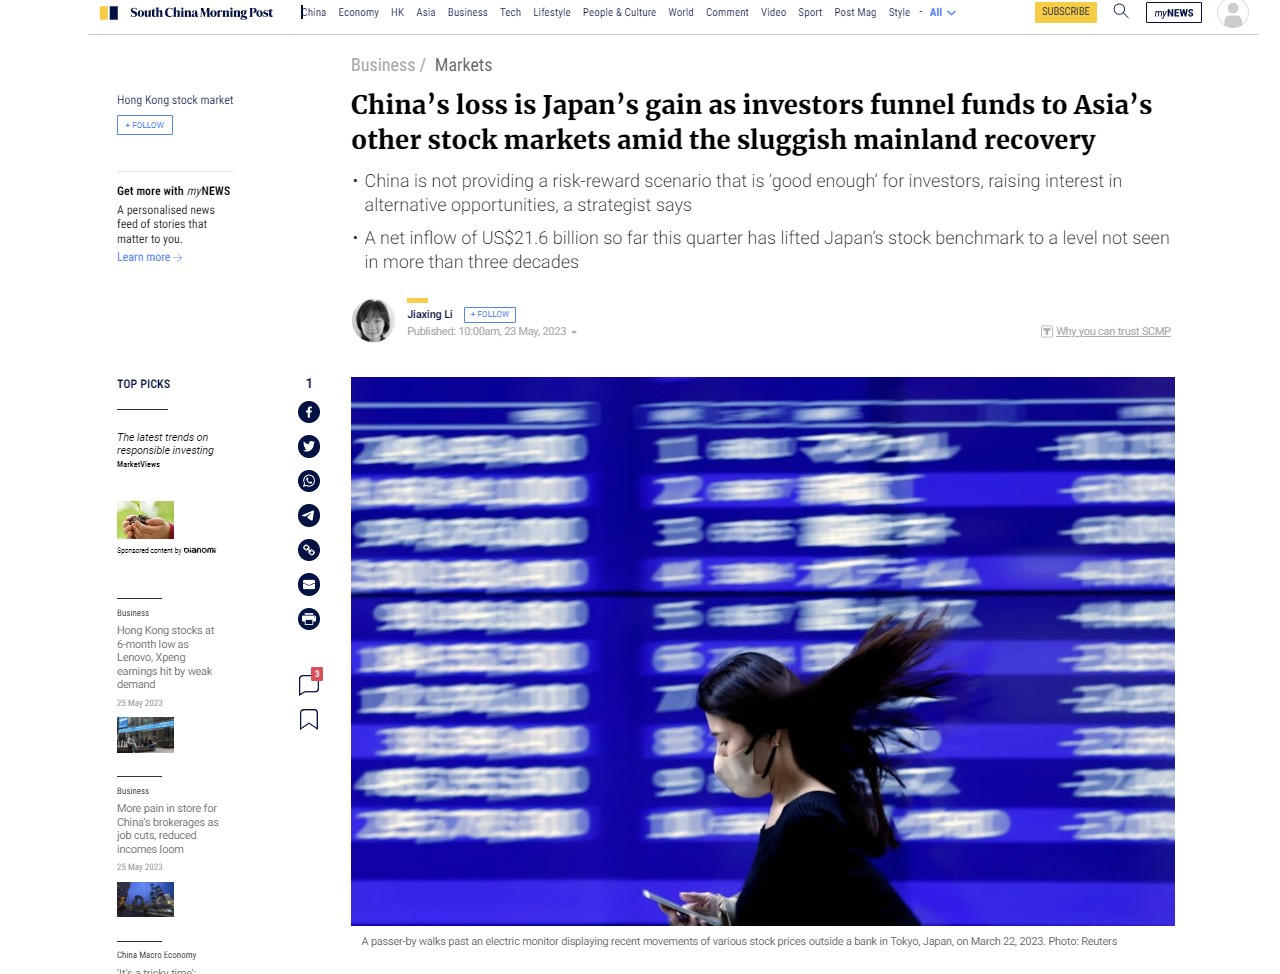 South China Morning Post: Oı επενδυτές απομακρύνονται από την αργή ανάκαμψη της Κίνας στα ασιατικά χρηματιστήρια